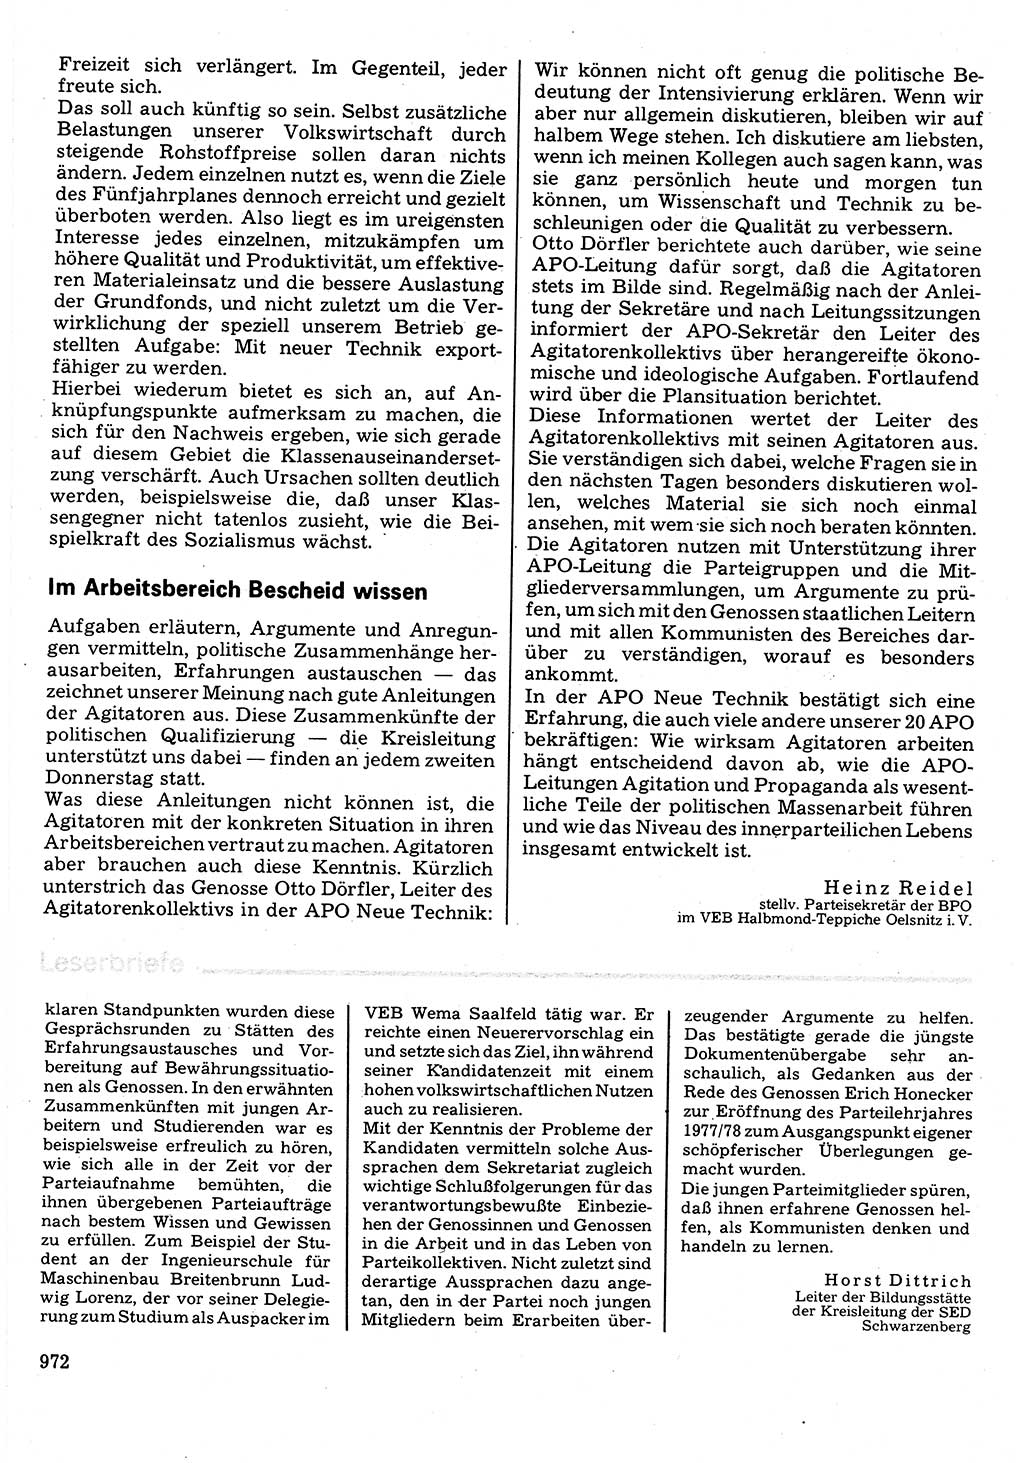 Neuer Weg (NW), Organ des Zentralkomitees (ZK) der SED (Sozialistische Einheitspartei Deutschlands) für Fragen des Parteilebens, 32. Jahrgang [Deutsche Demokratische Republik (DDR)] 1977, Seite 972 (NW ZK SED DDR 1977, S. 972)